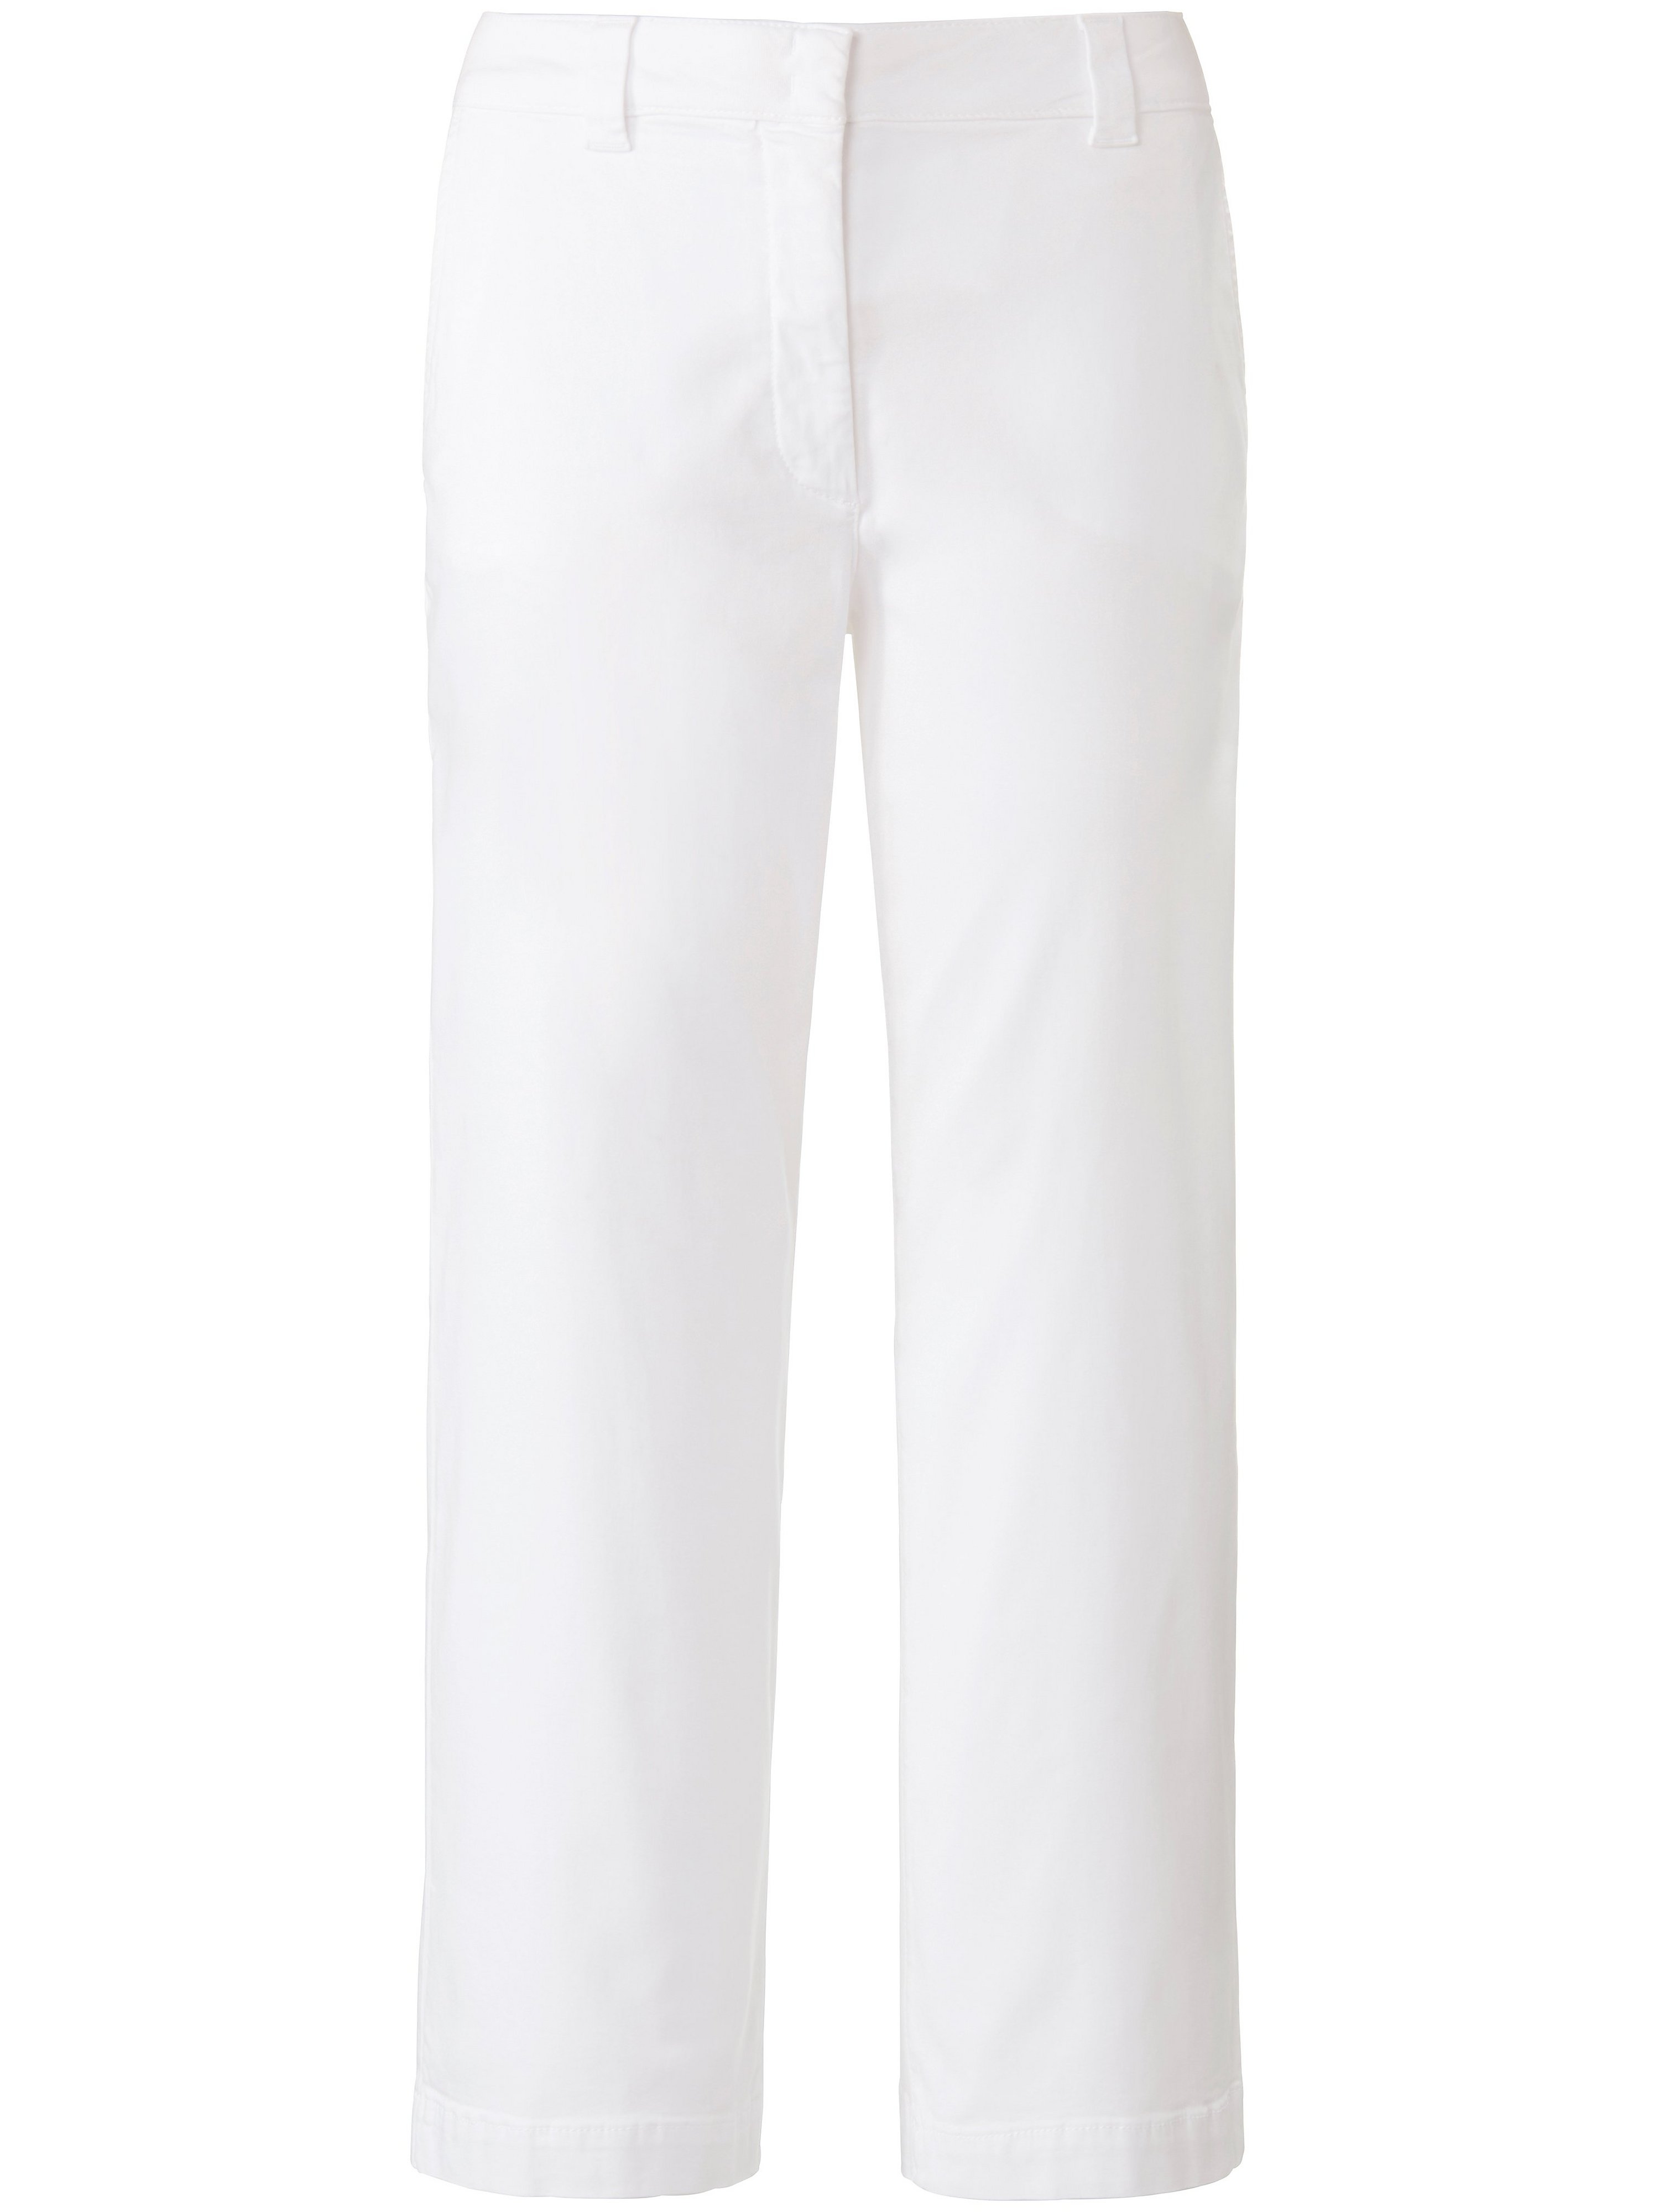 Le pantalon Wide Fit avec 2 poches devant  DAY.LIKE blanc